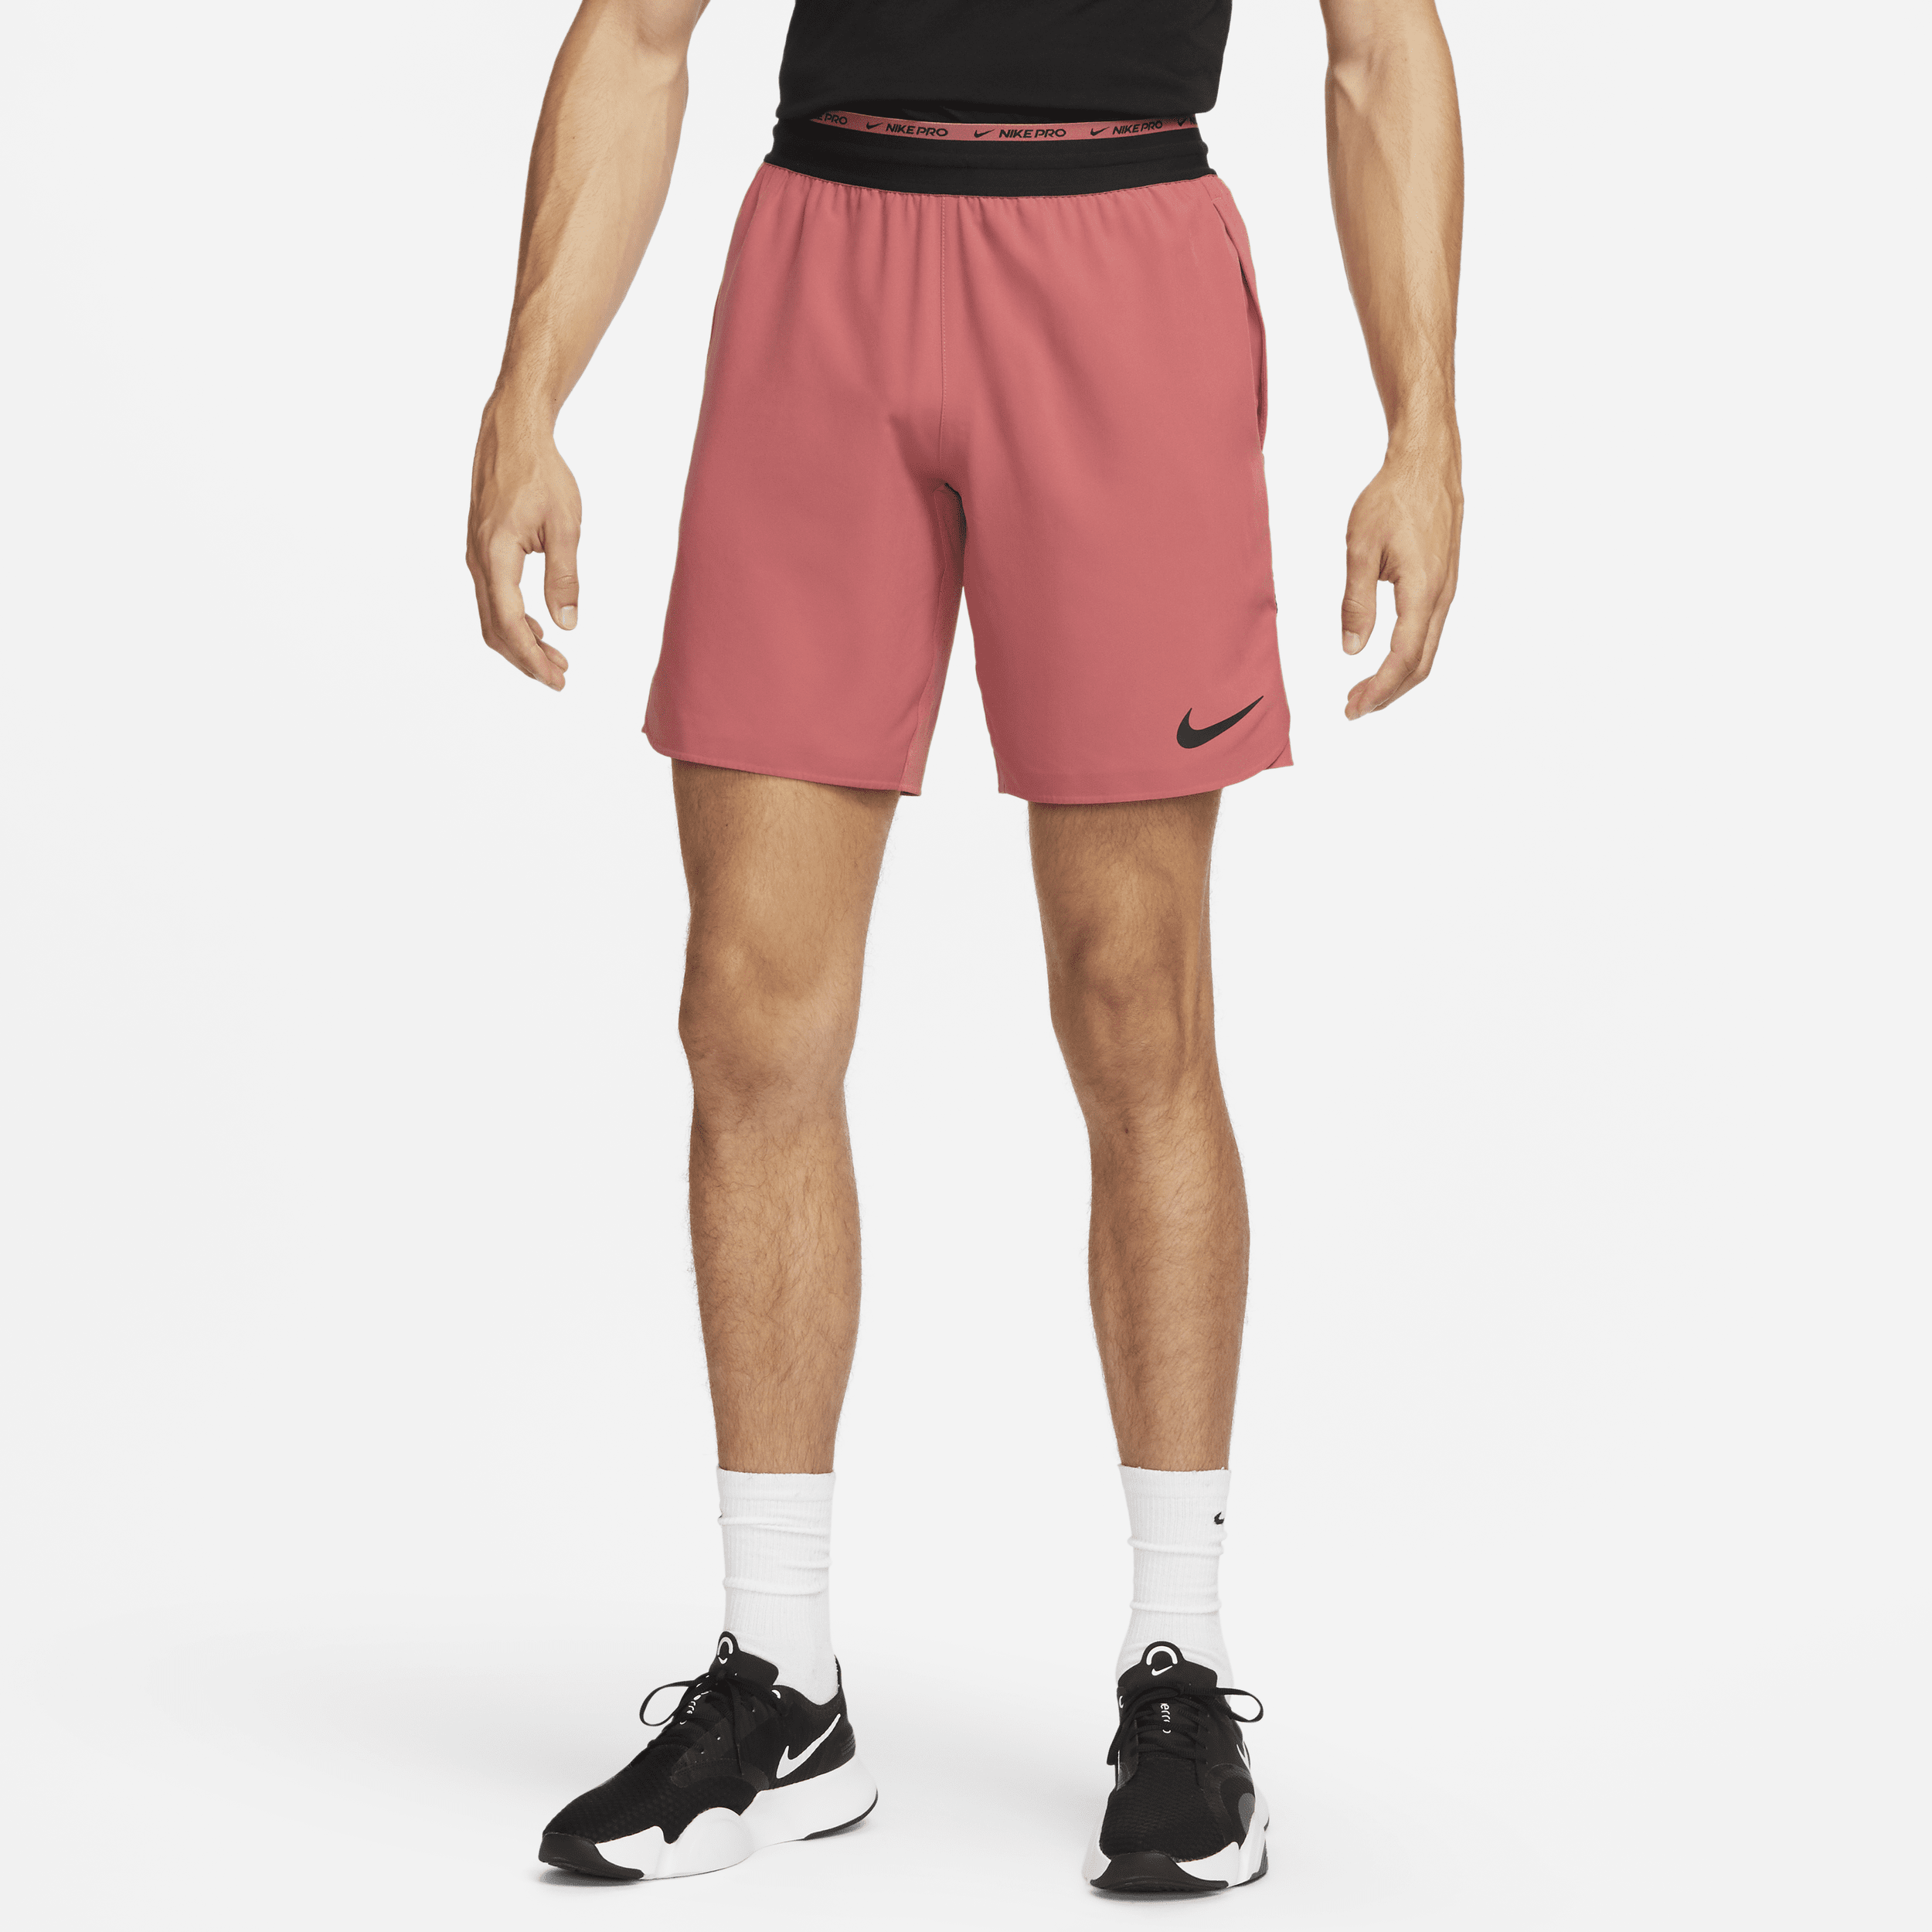 Shorts da training non foderati 20 cm Nike Dri-FIT Flex Rep Pro Collection – Uomo - Rosso